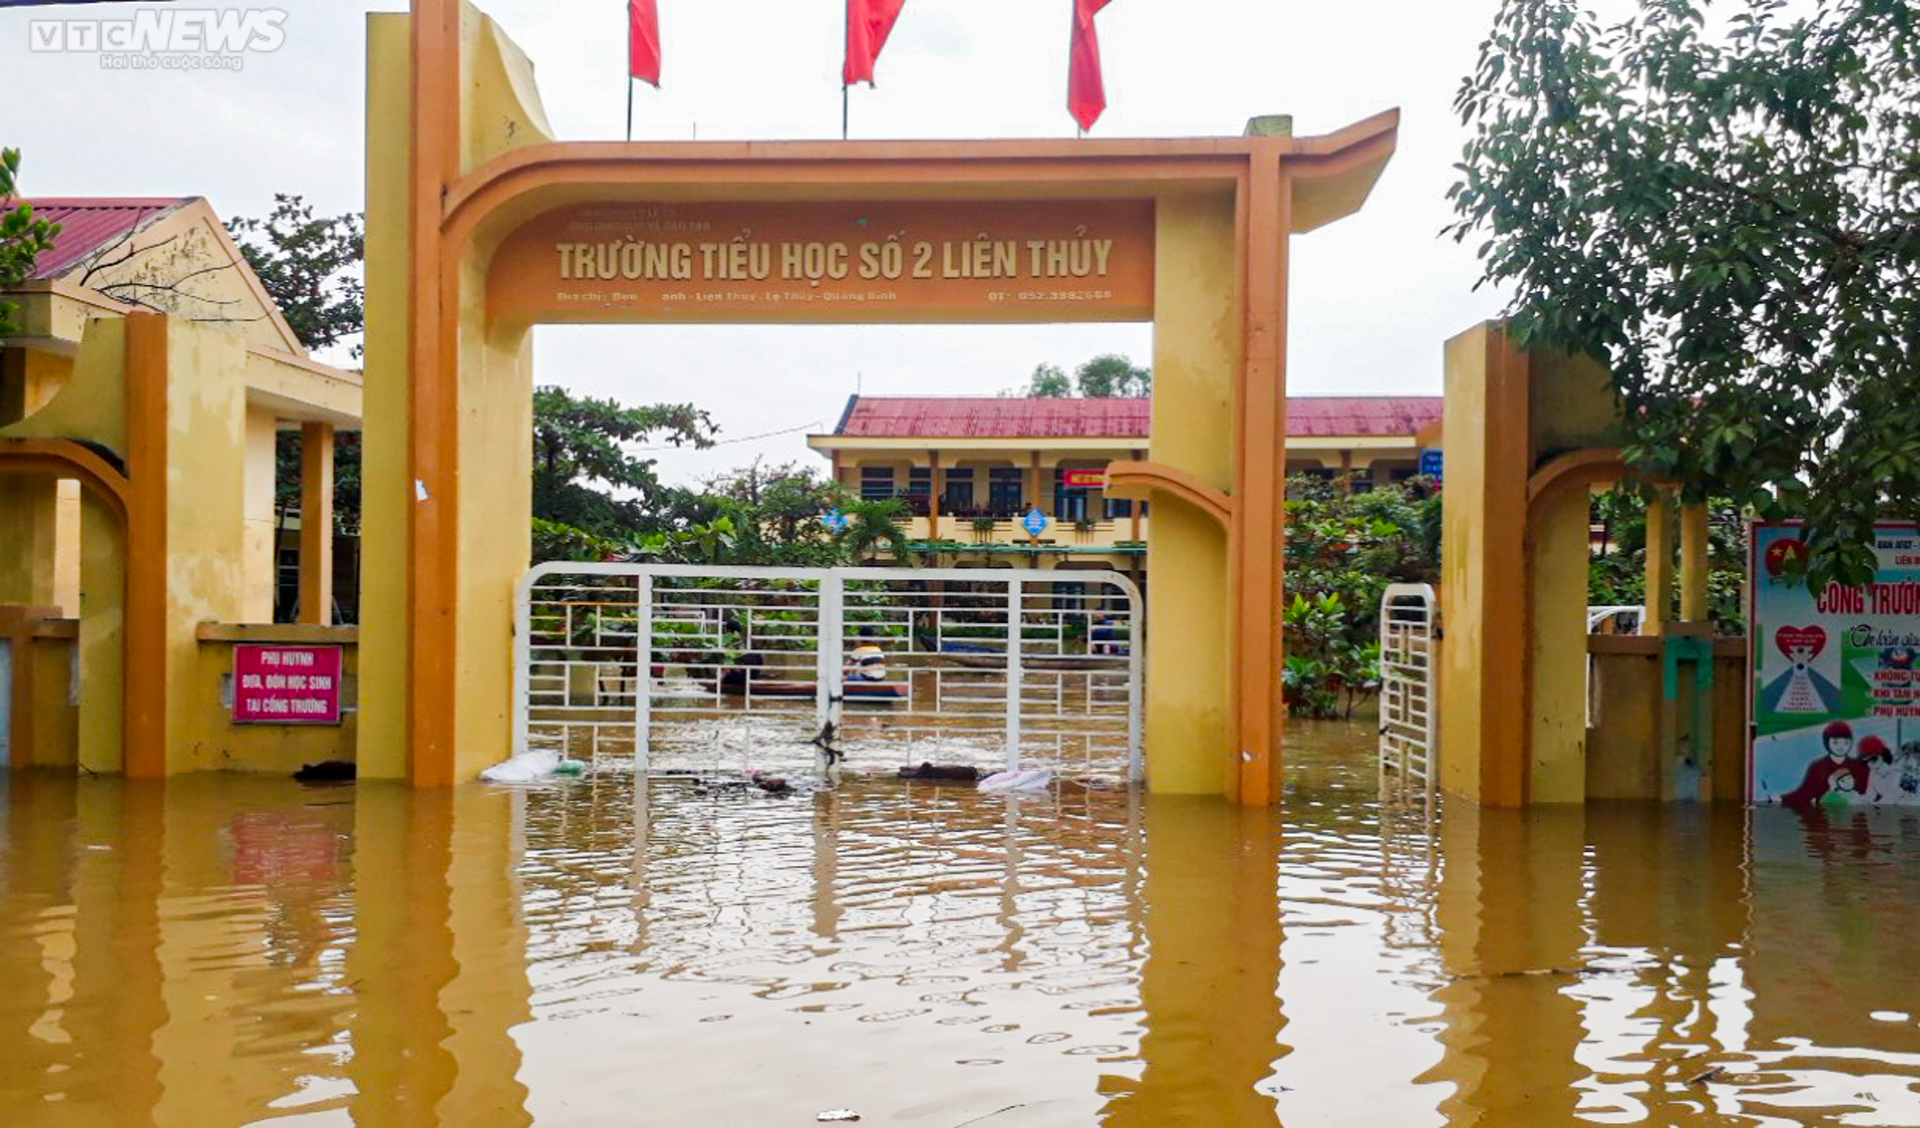 Ảnh: Trường học ở vùng lũ Quảng Bình trong mênh mông biển nước - 3